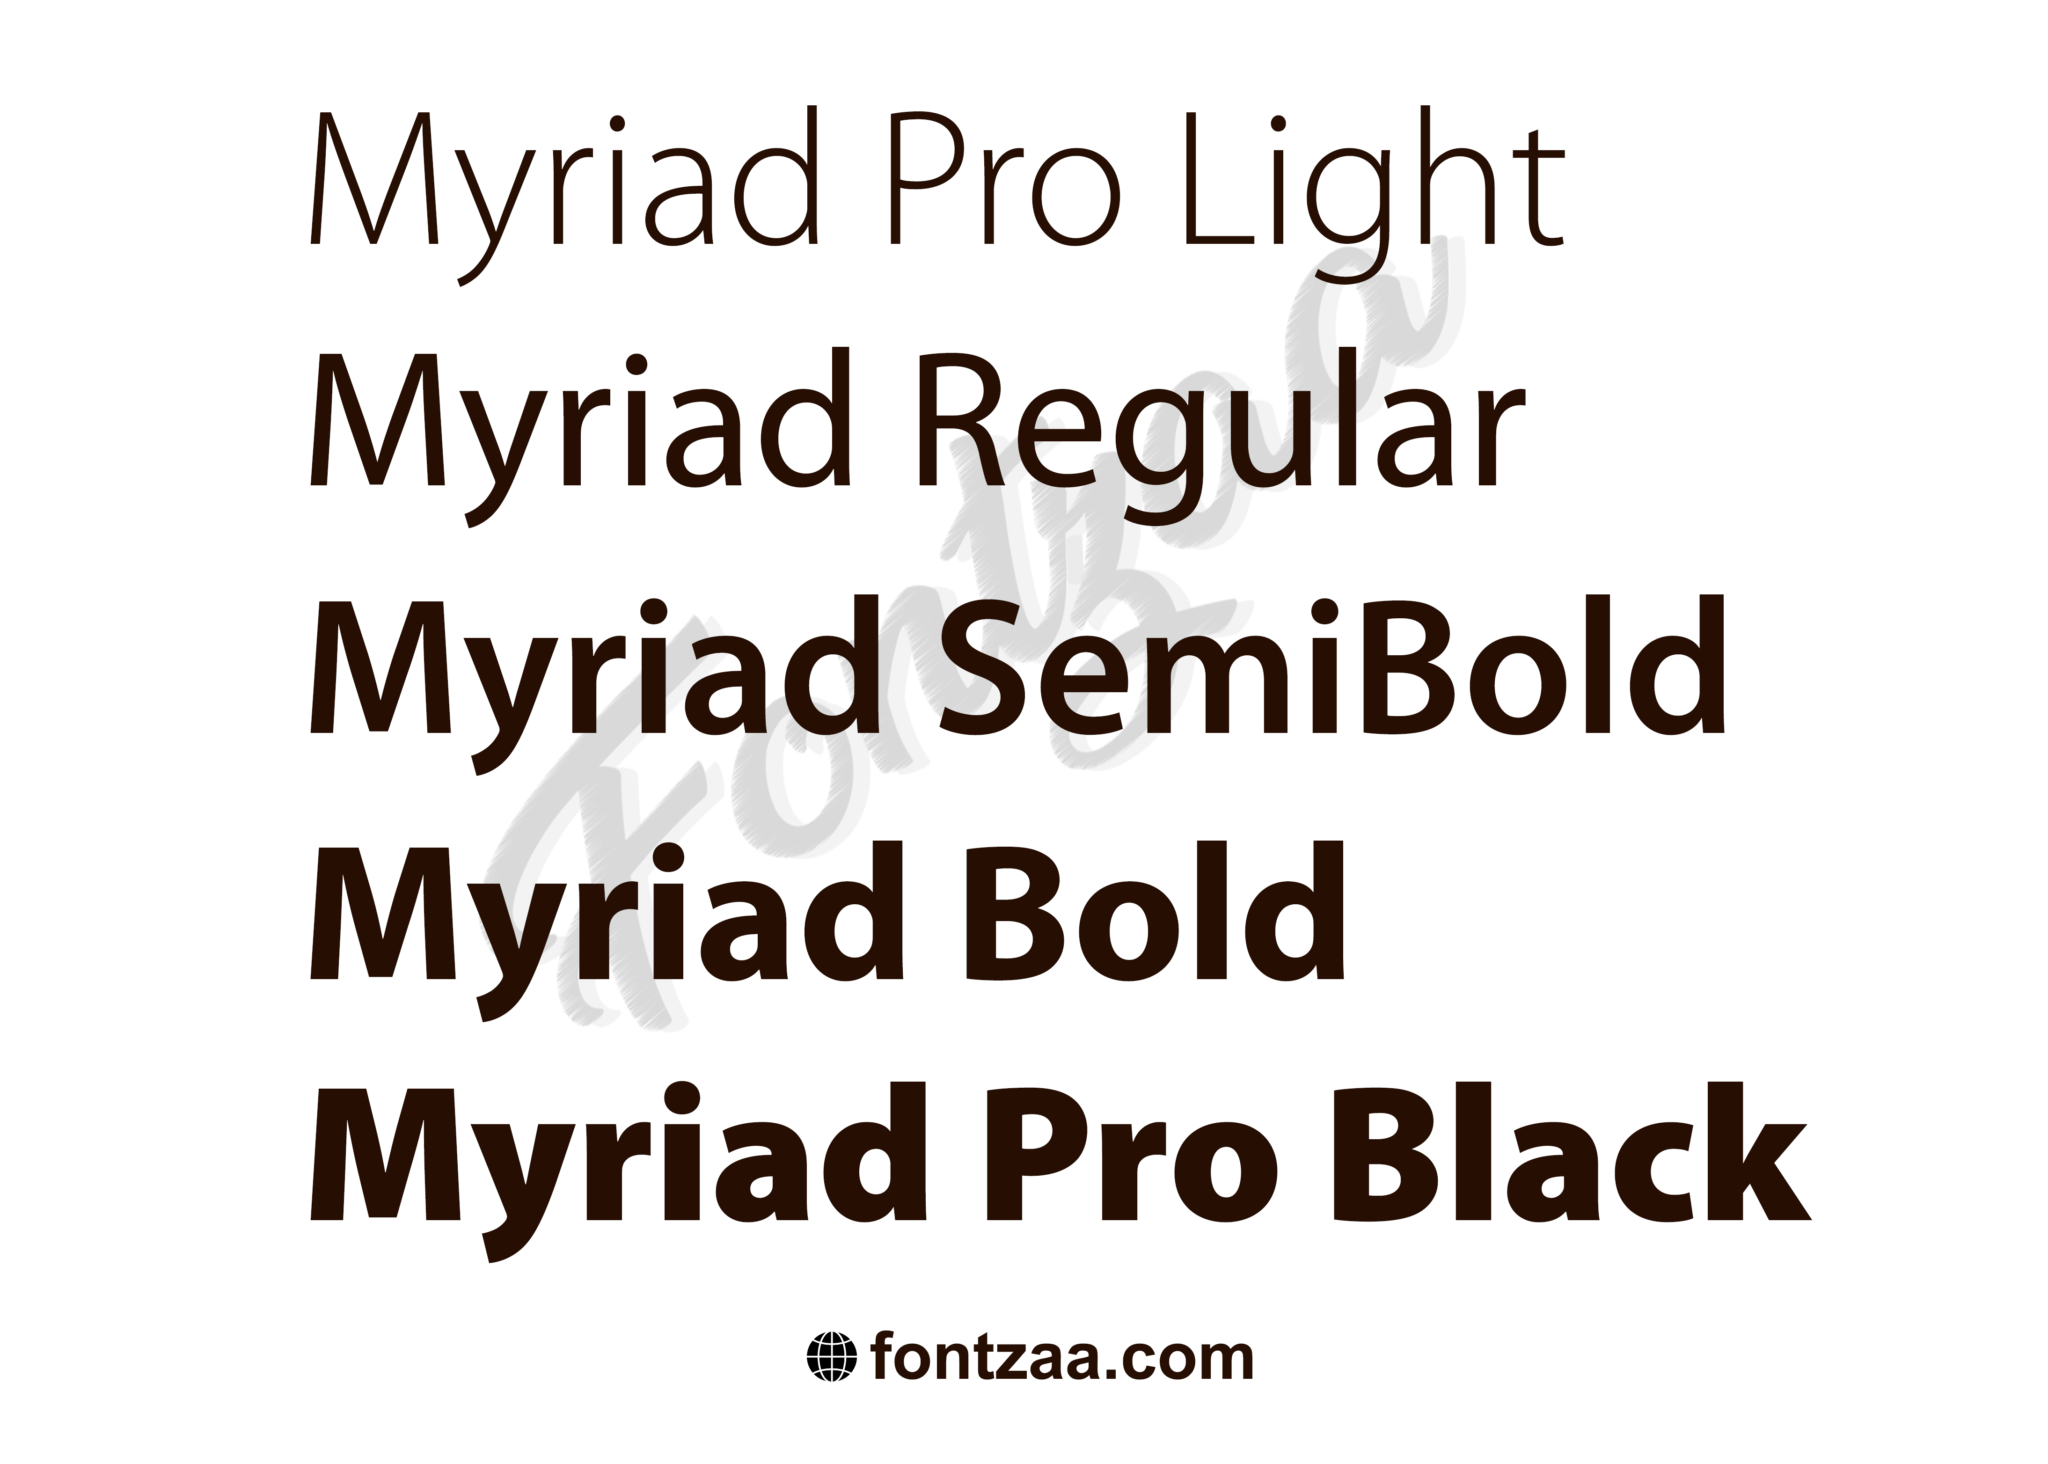 myriad pro font download for illustrator